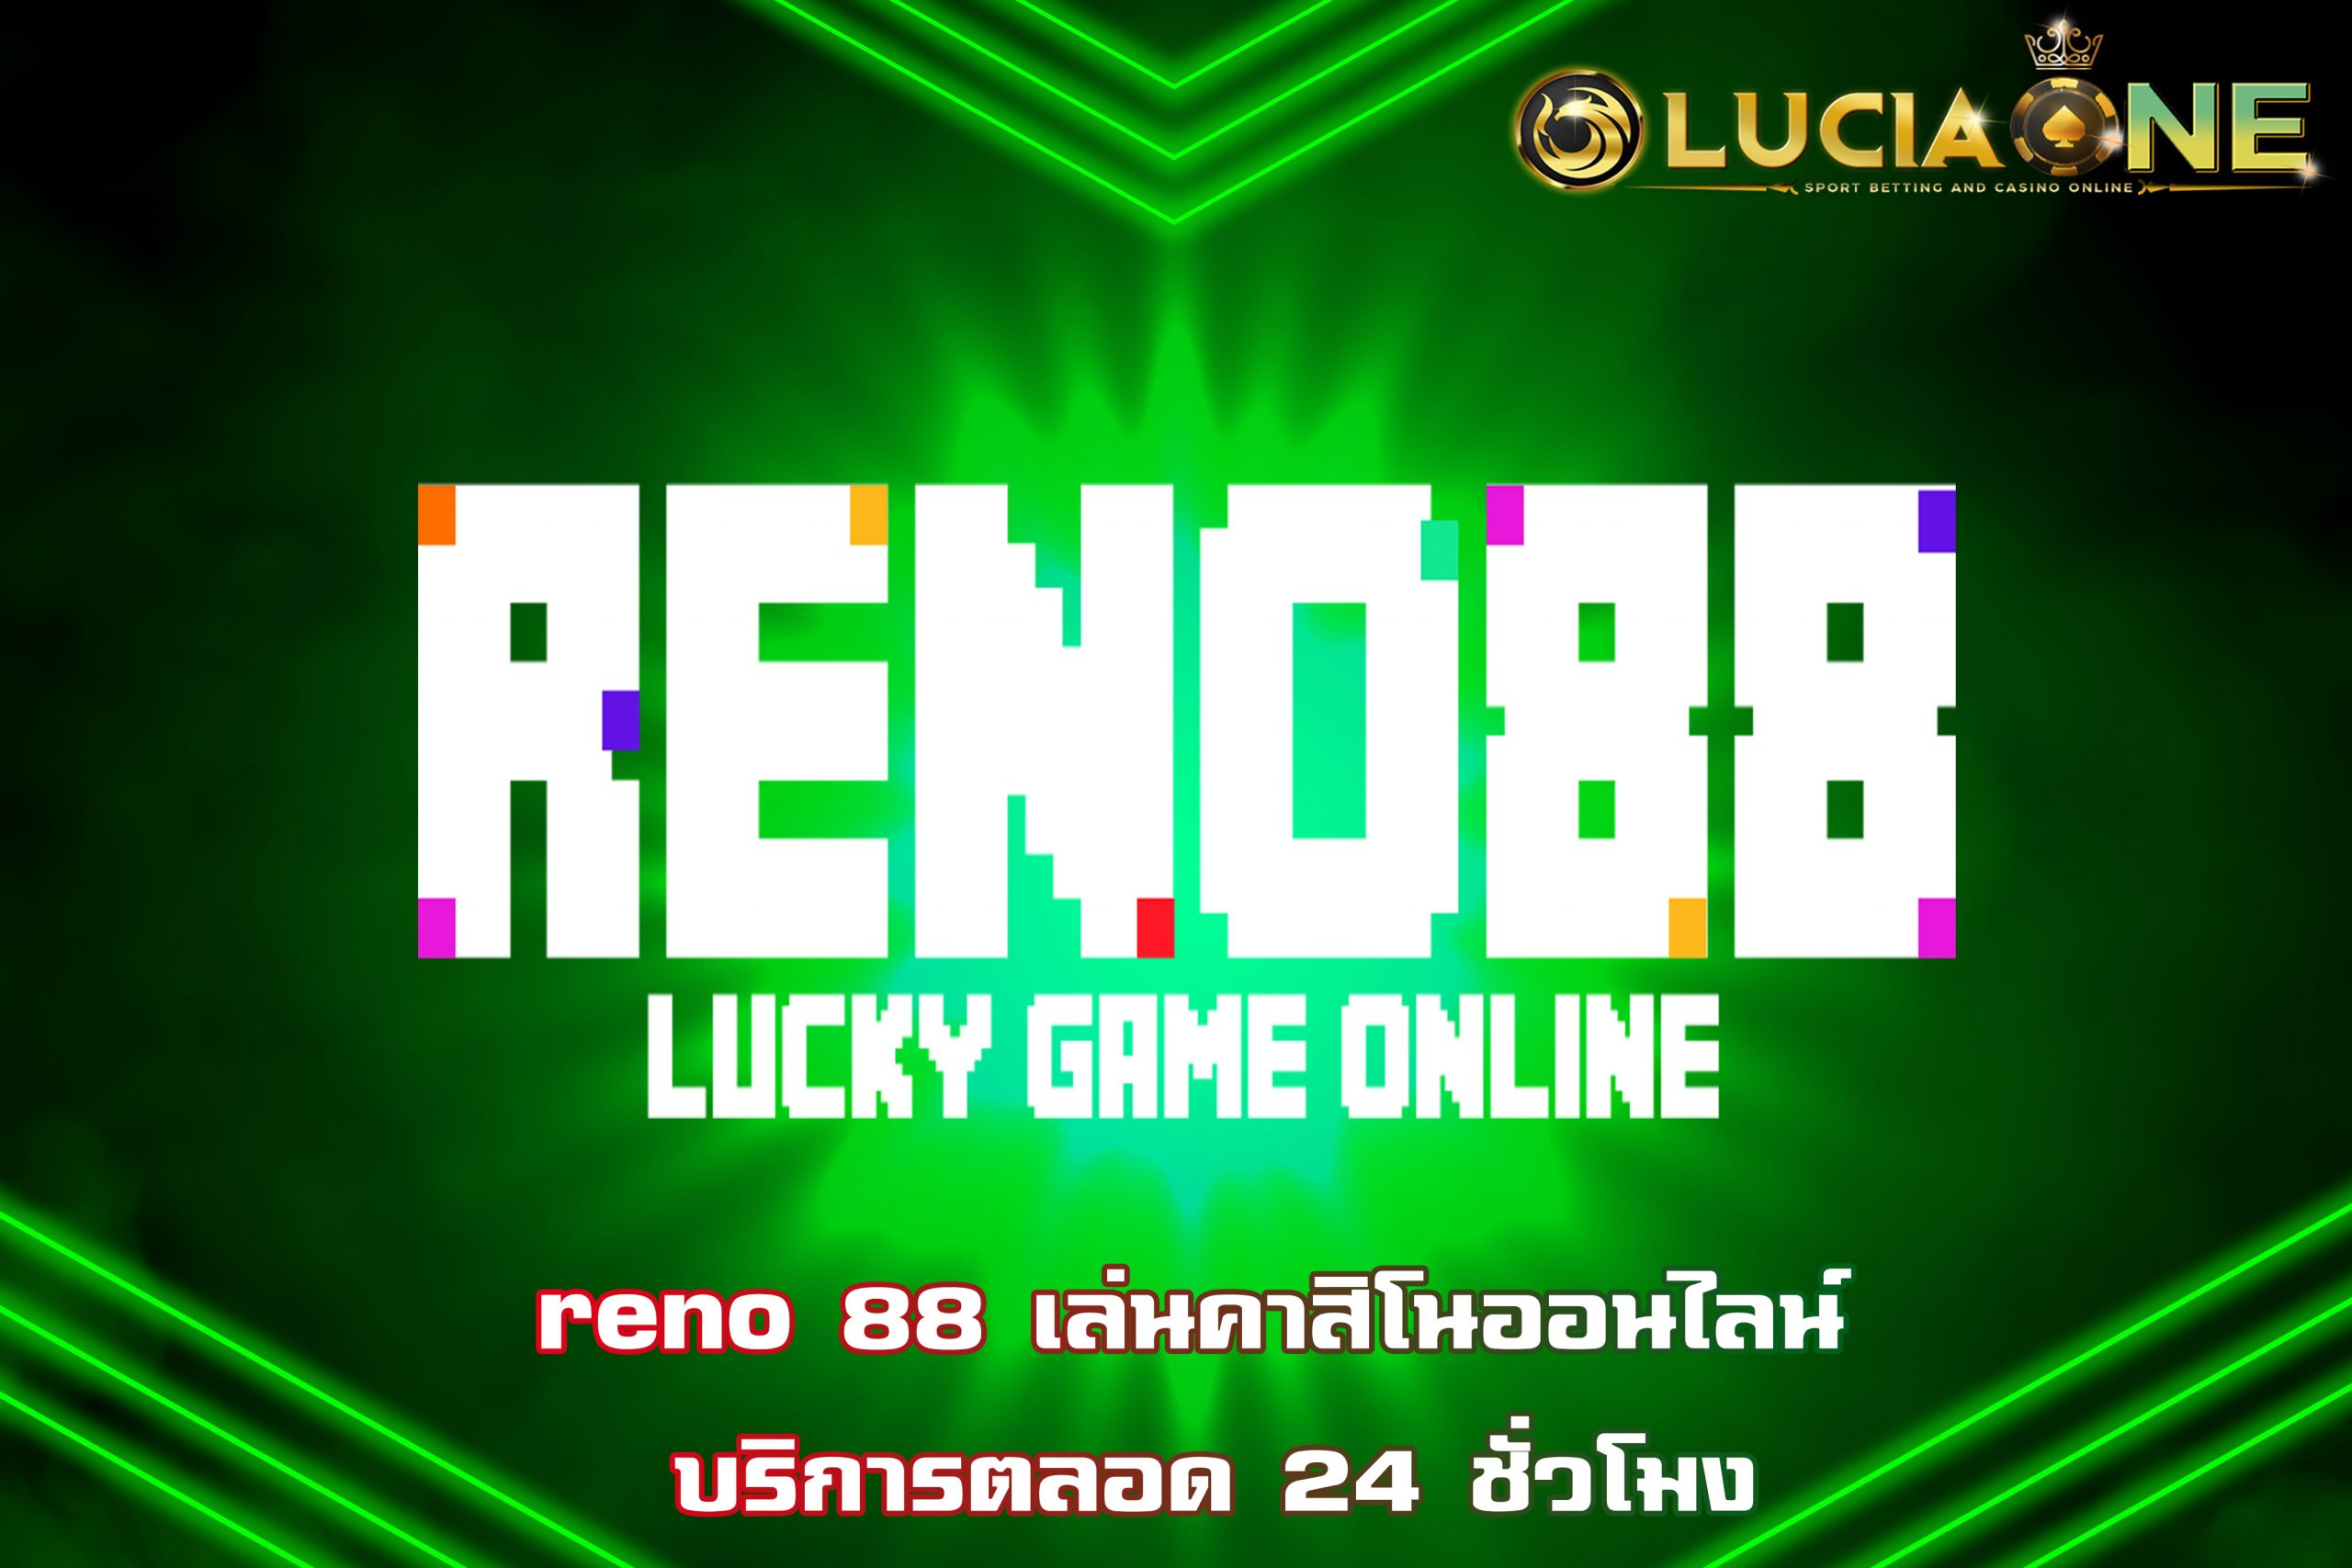 reno 88 เล่นคาสิโนออนไลน์ บริการตลอด 24 ชั่วโมง